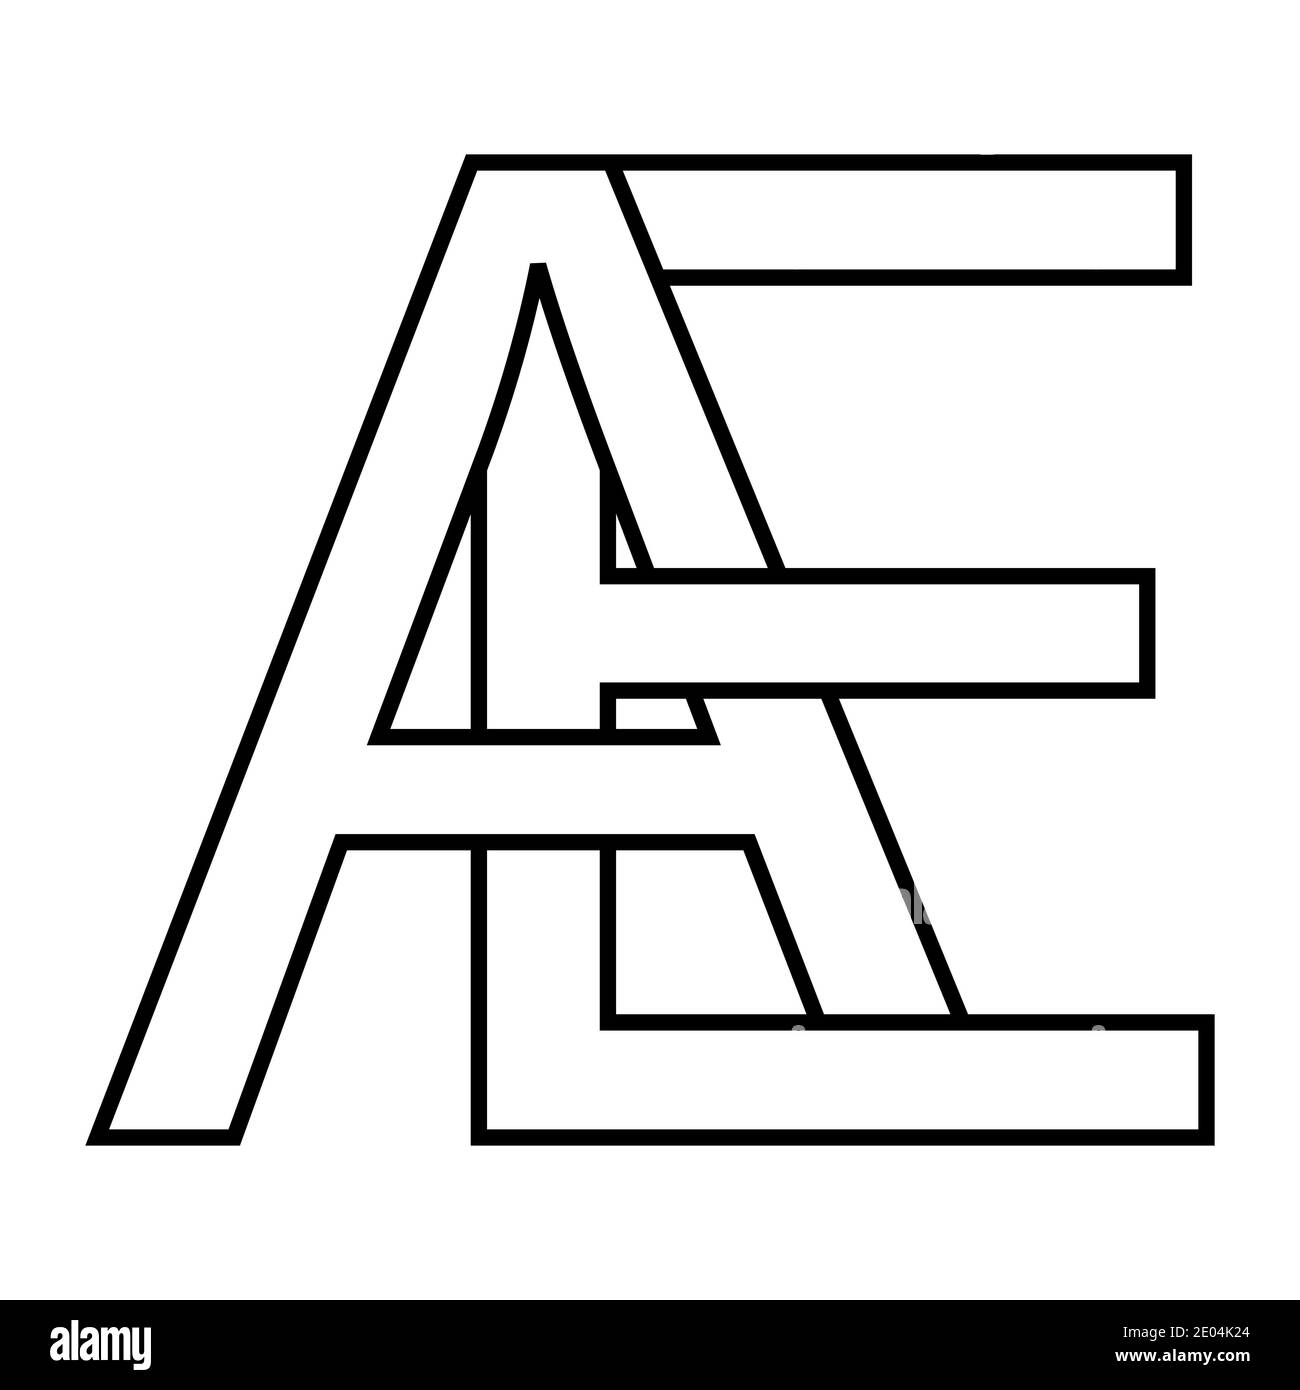 Logo ae icône signe deux lettres entrelacées A E, vecteur logo ae premières lettres majuscules motif alphabet a e Illustration de Vecteur